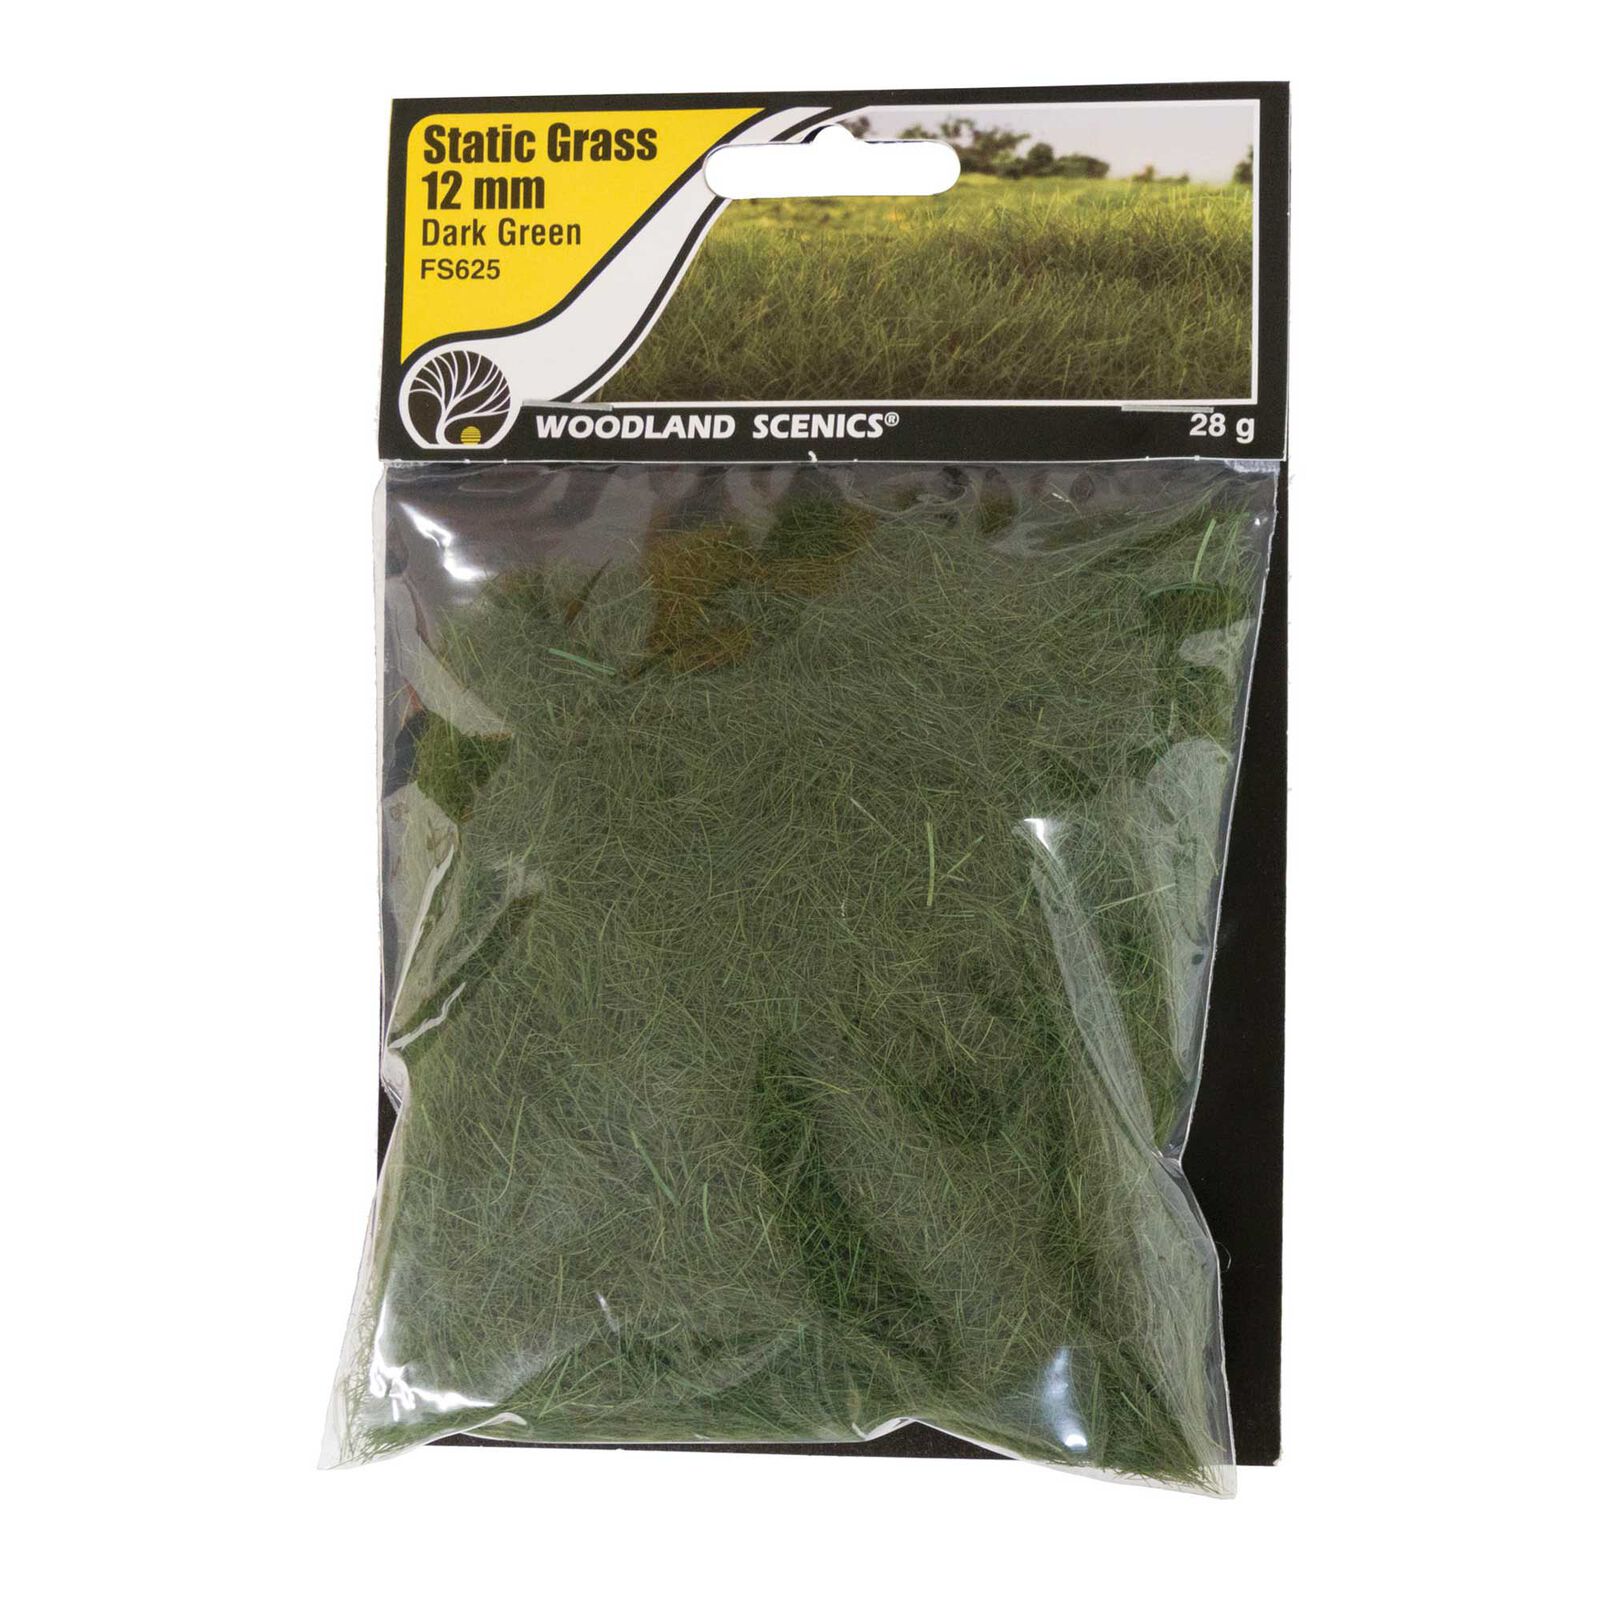 Static Grass Dark Green 12mm